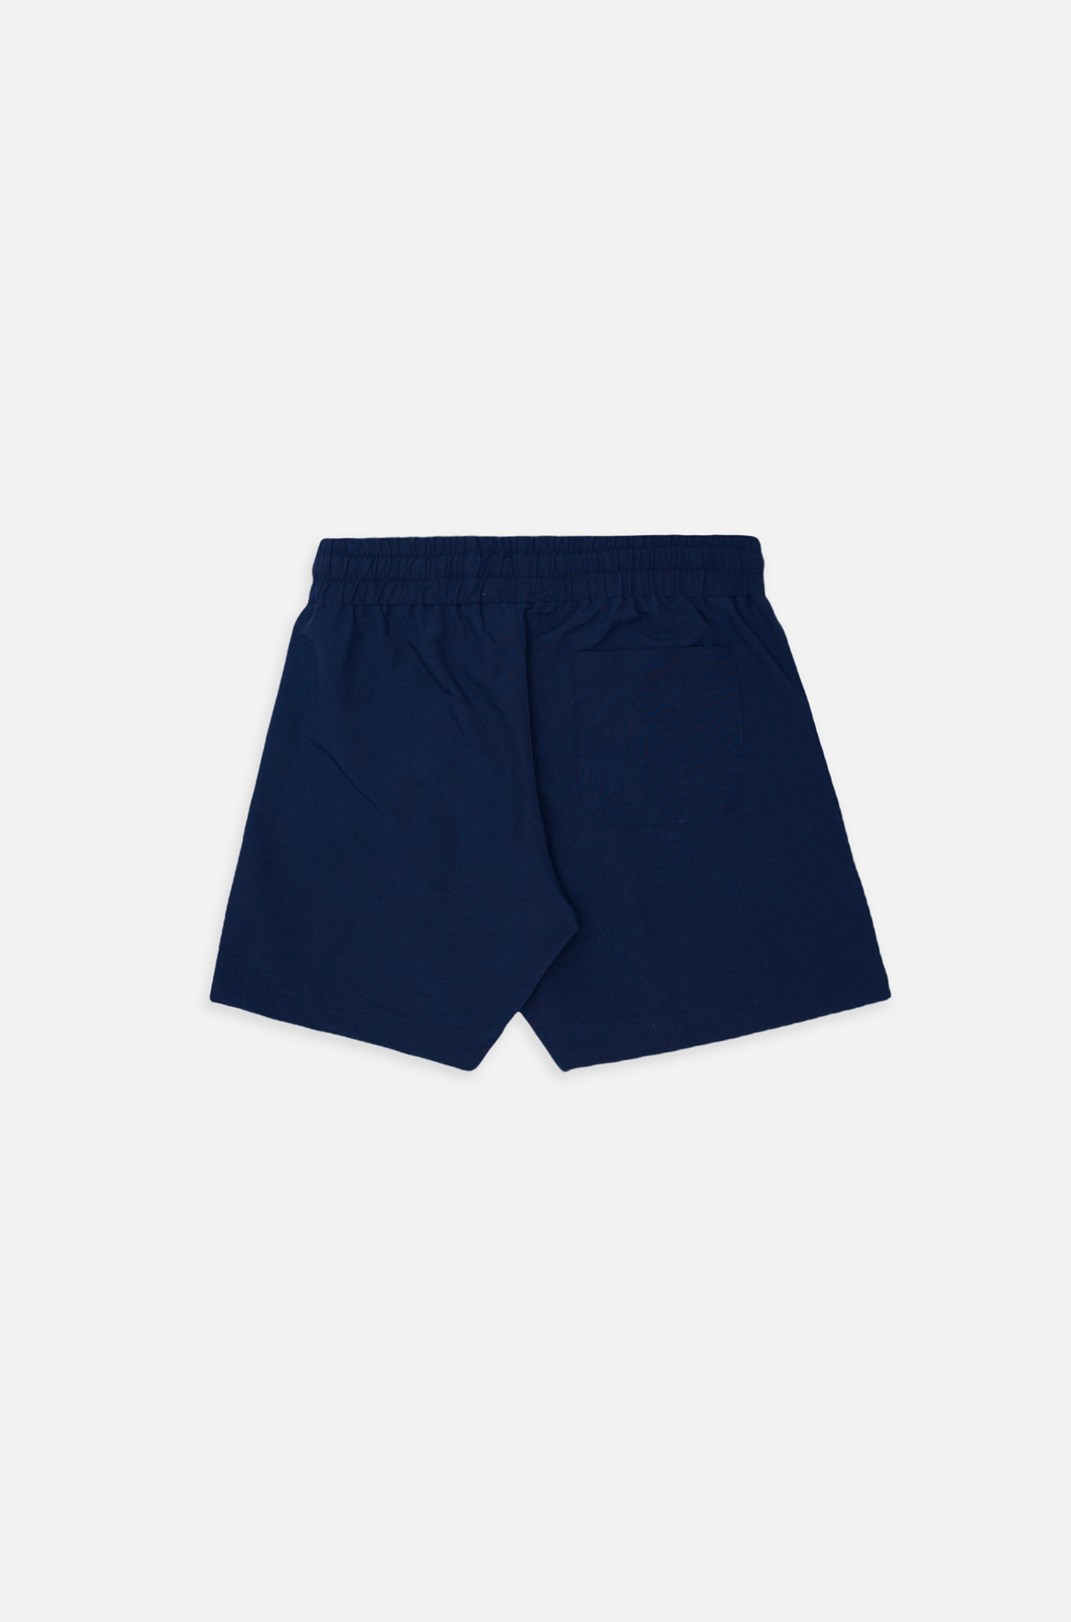 Shorts Approve Azul Marinho